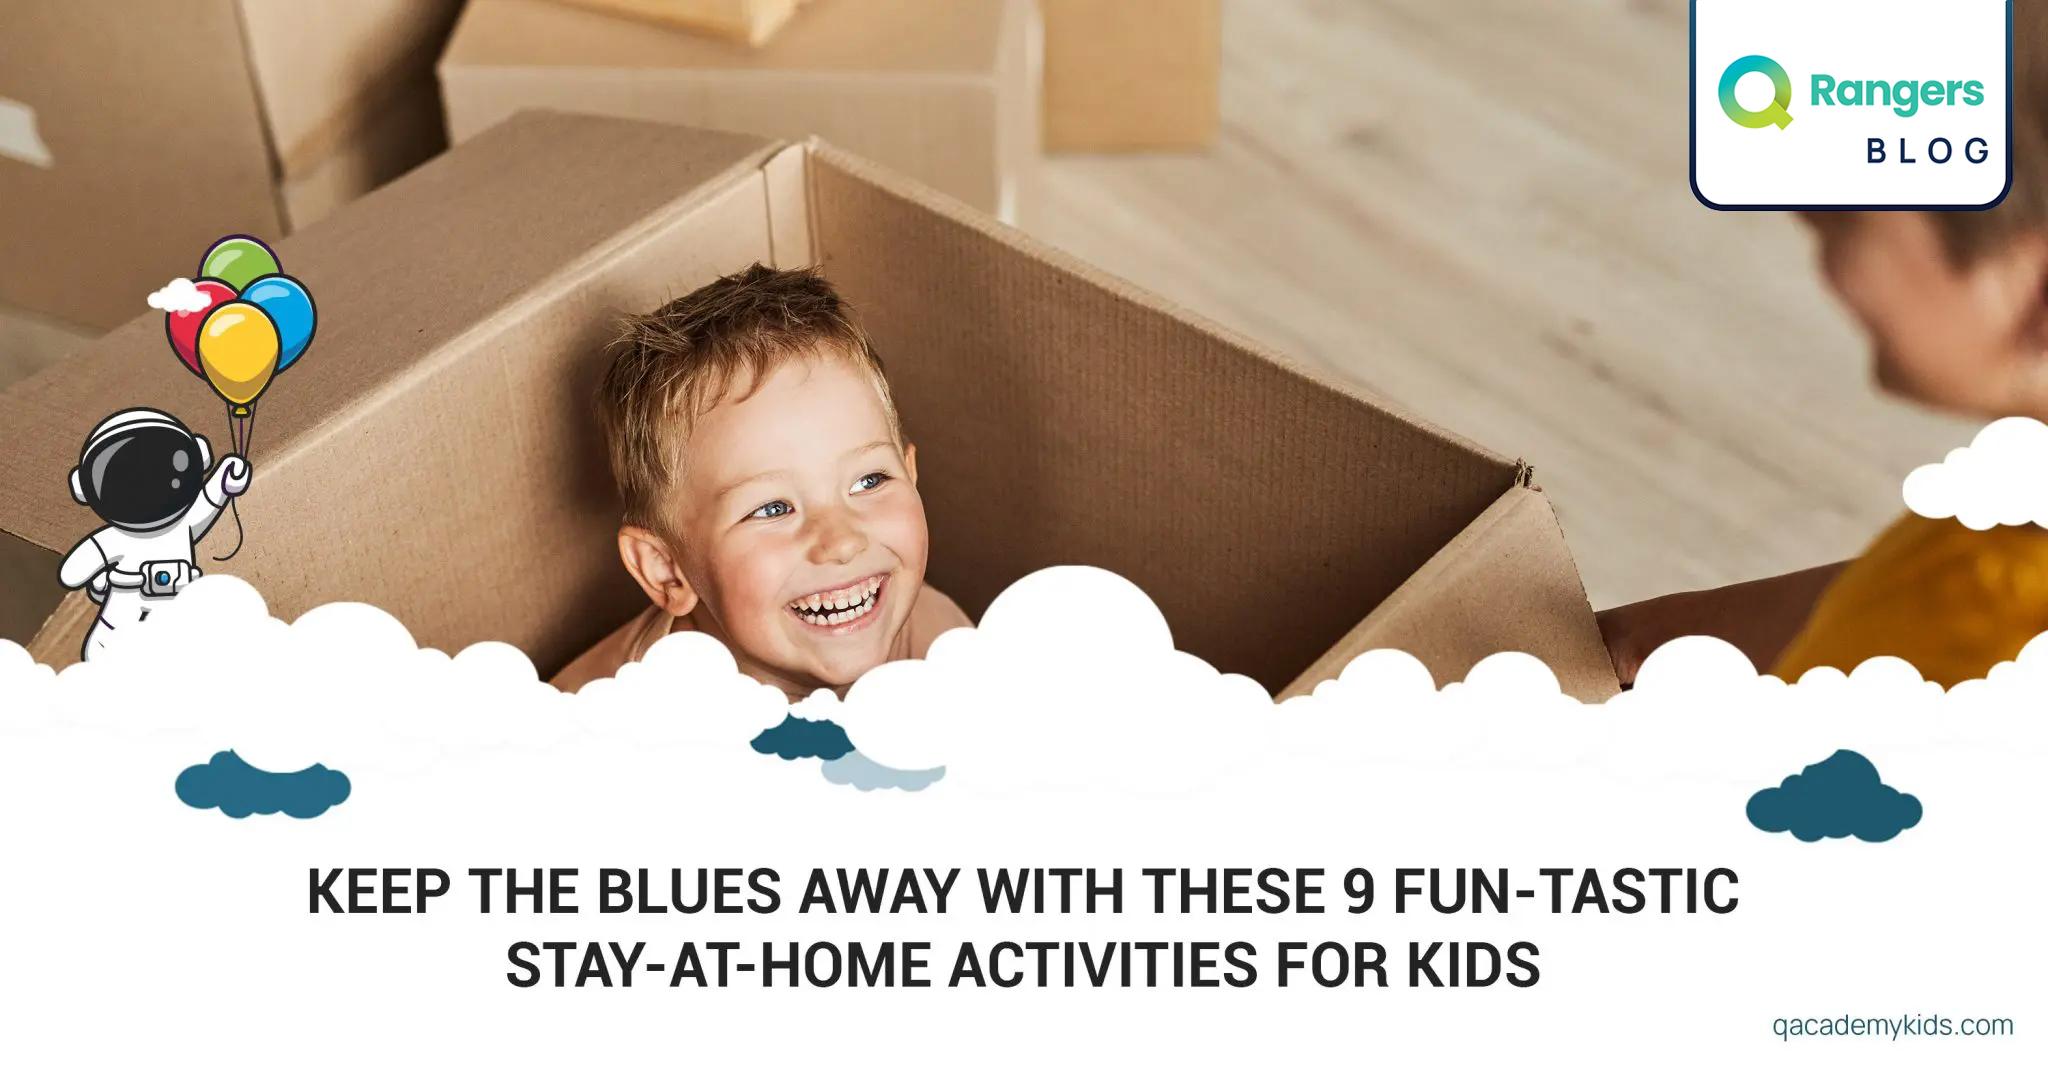 Activities for kids